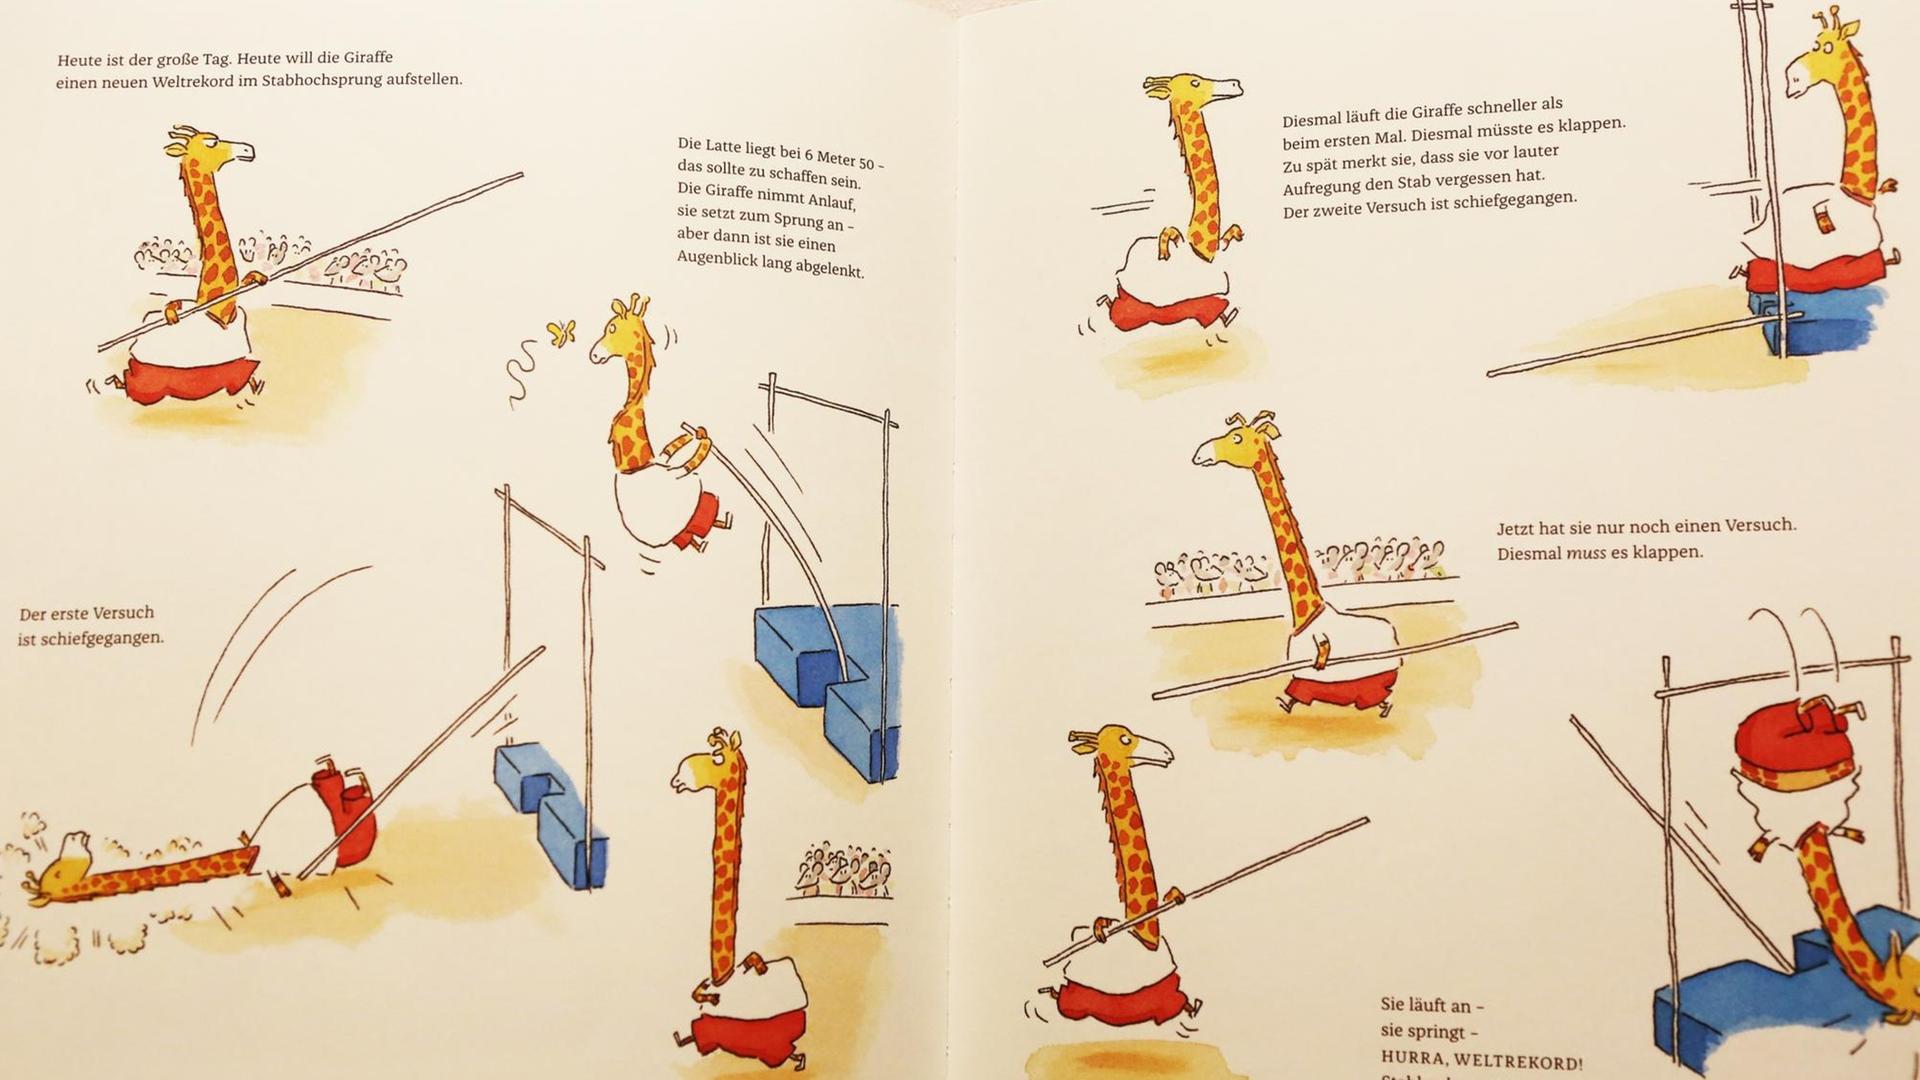 Eine Doppelseite aus dem Buch "Sport ist herrlich" mit einer Giraffe, die sich am Hochsprung versucht